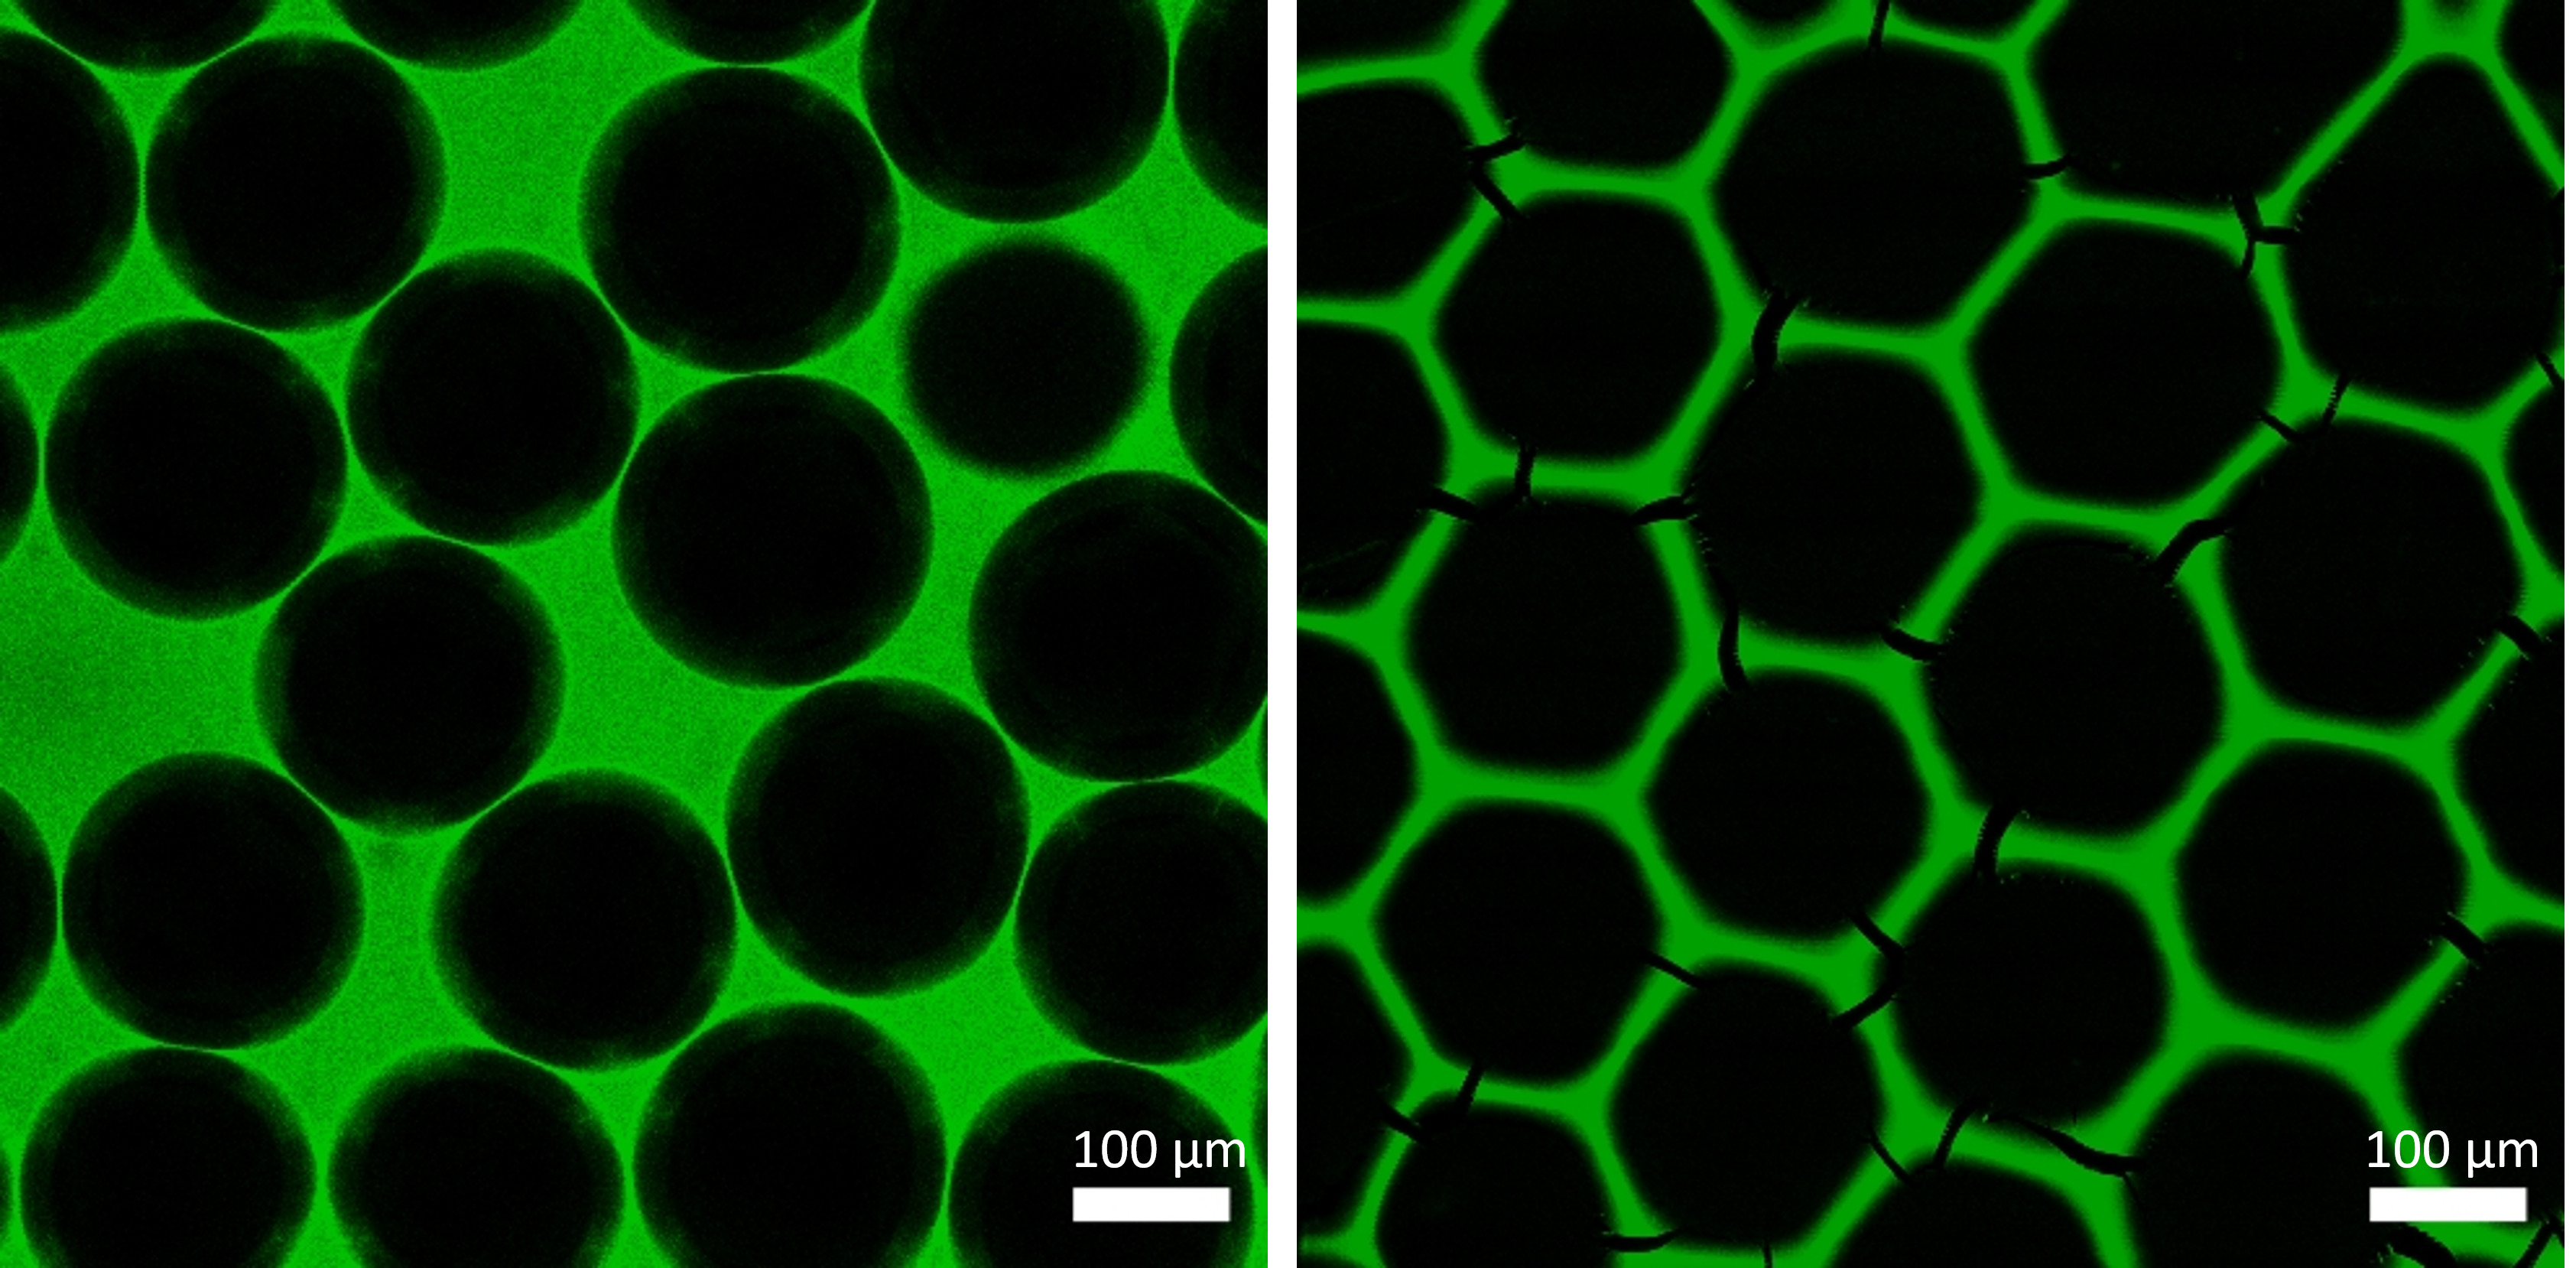 Links sind unregelmäßig verteilte schwarze, runde Strukturen vor einem grün fluoreszierenden Hintergrund zu sehen, rechts ein hexagonales grünes Gitter.